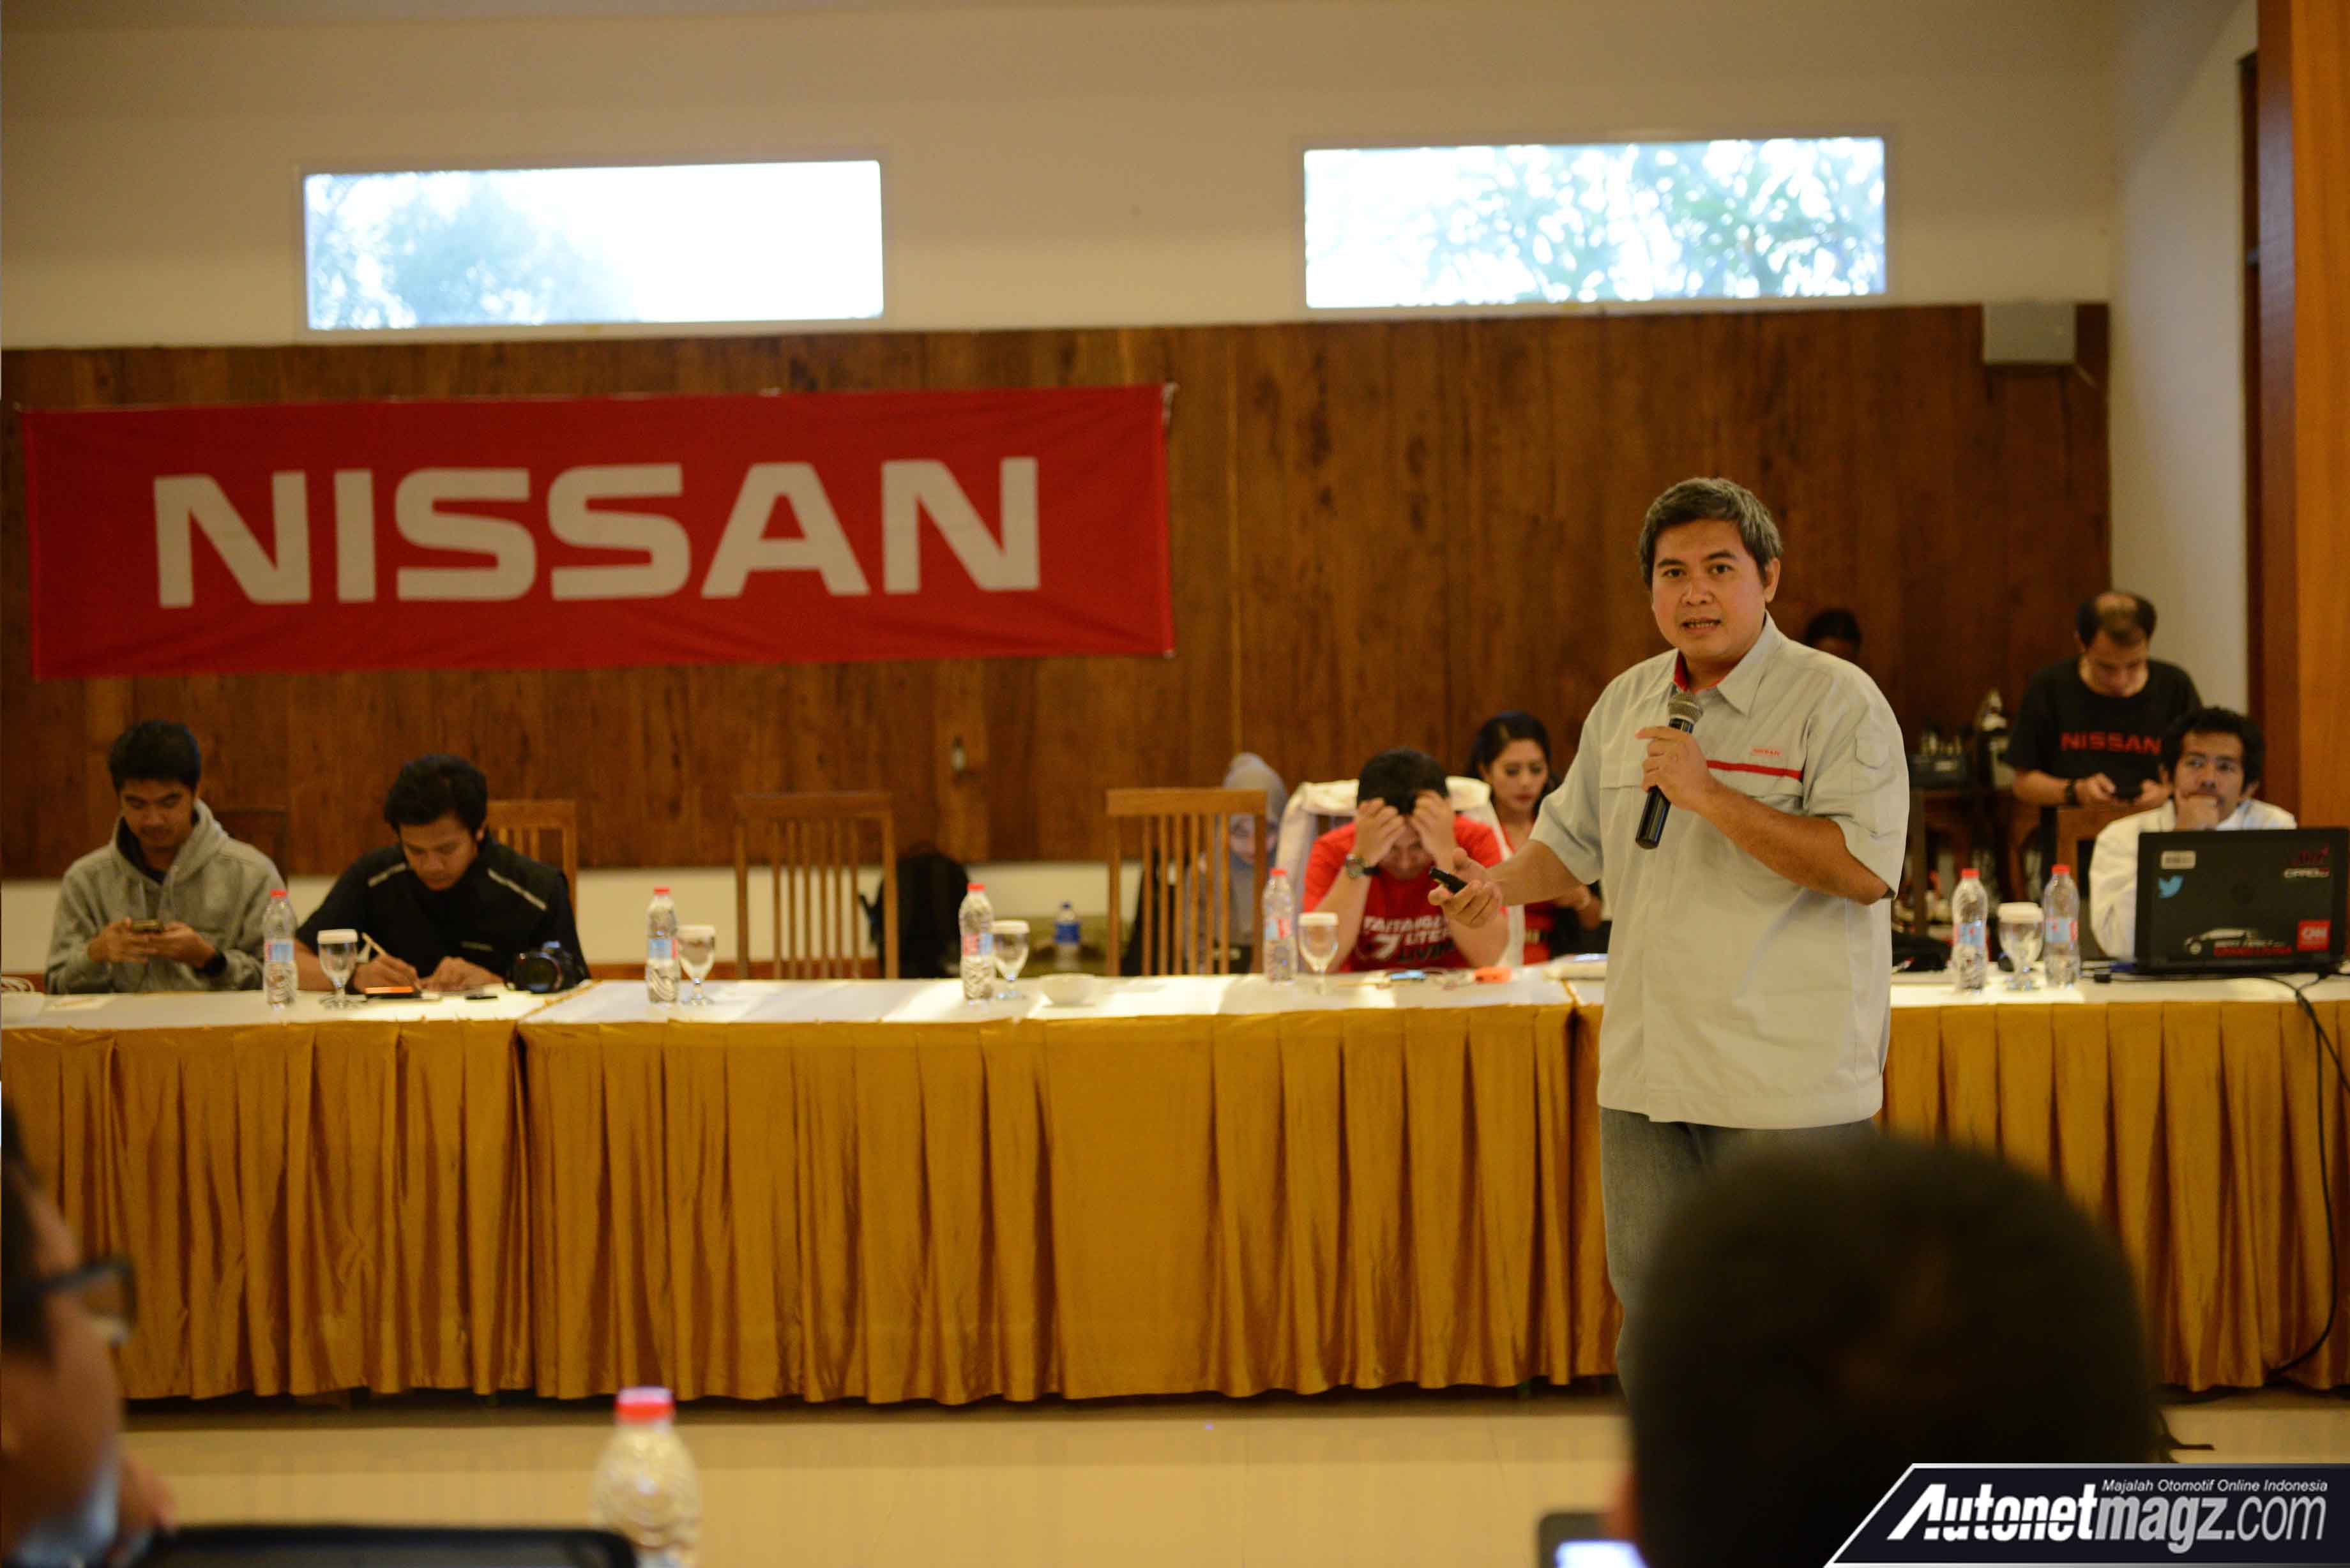 Berita, Bapak Sugihendi, Trainer Nissan College sedang menjelaskan mengenai eco-driving: Undang Media, Nissan Kembali Sosialisasikan Nissan Intelligent Mobility